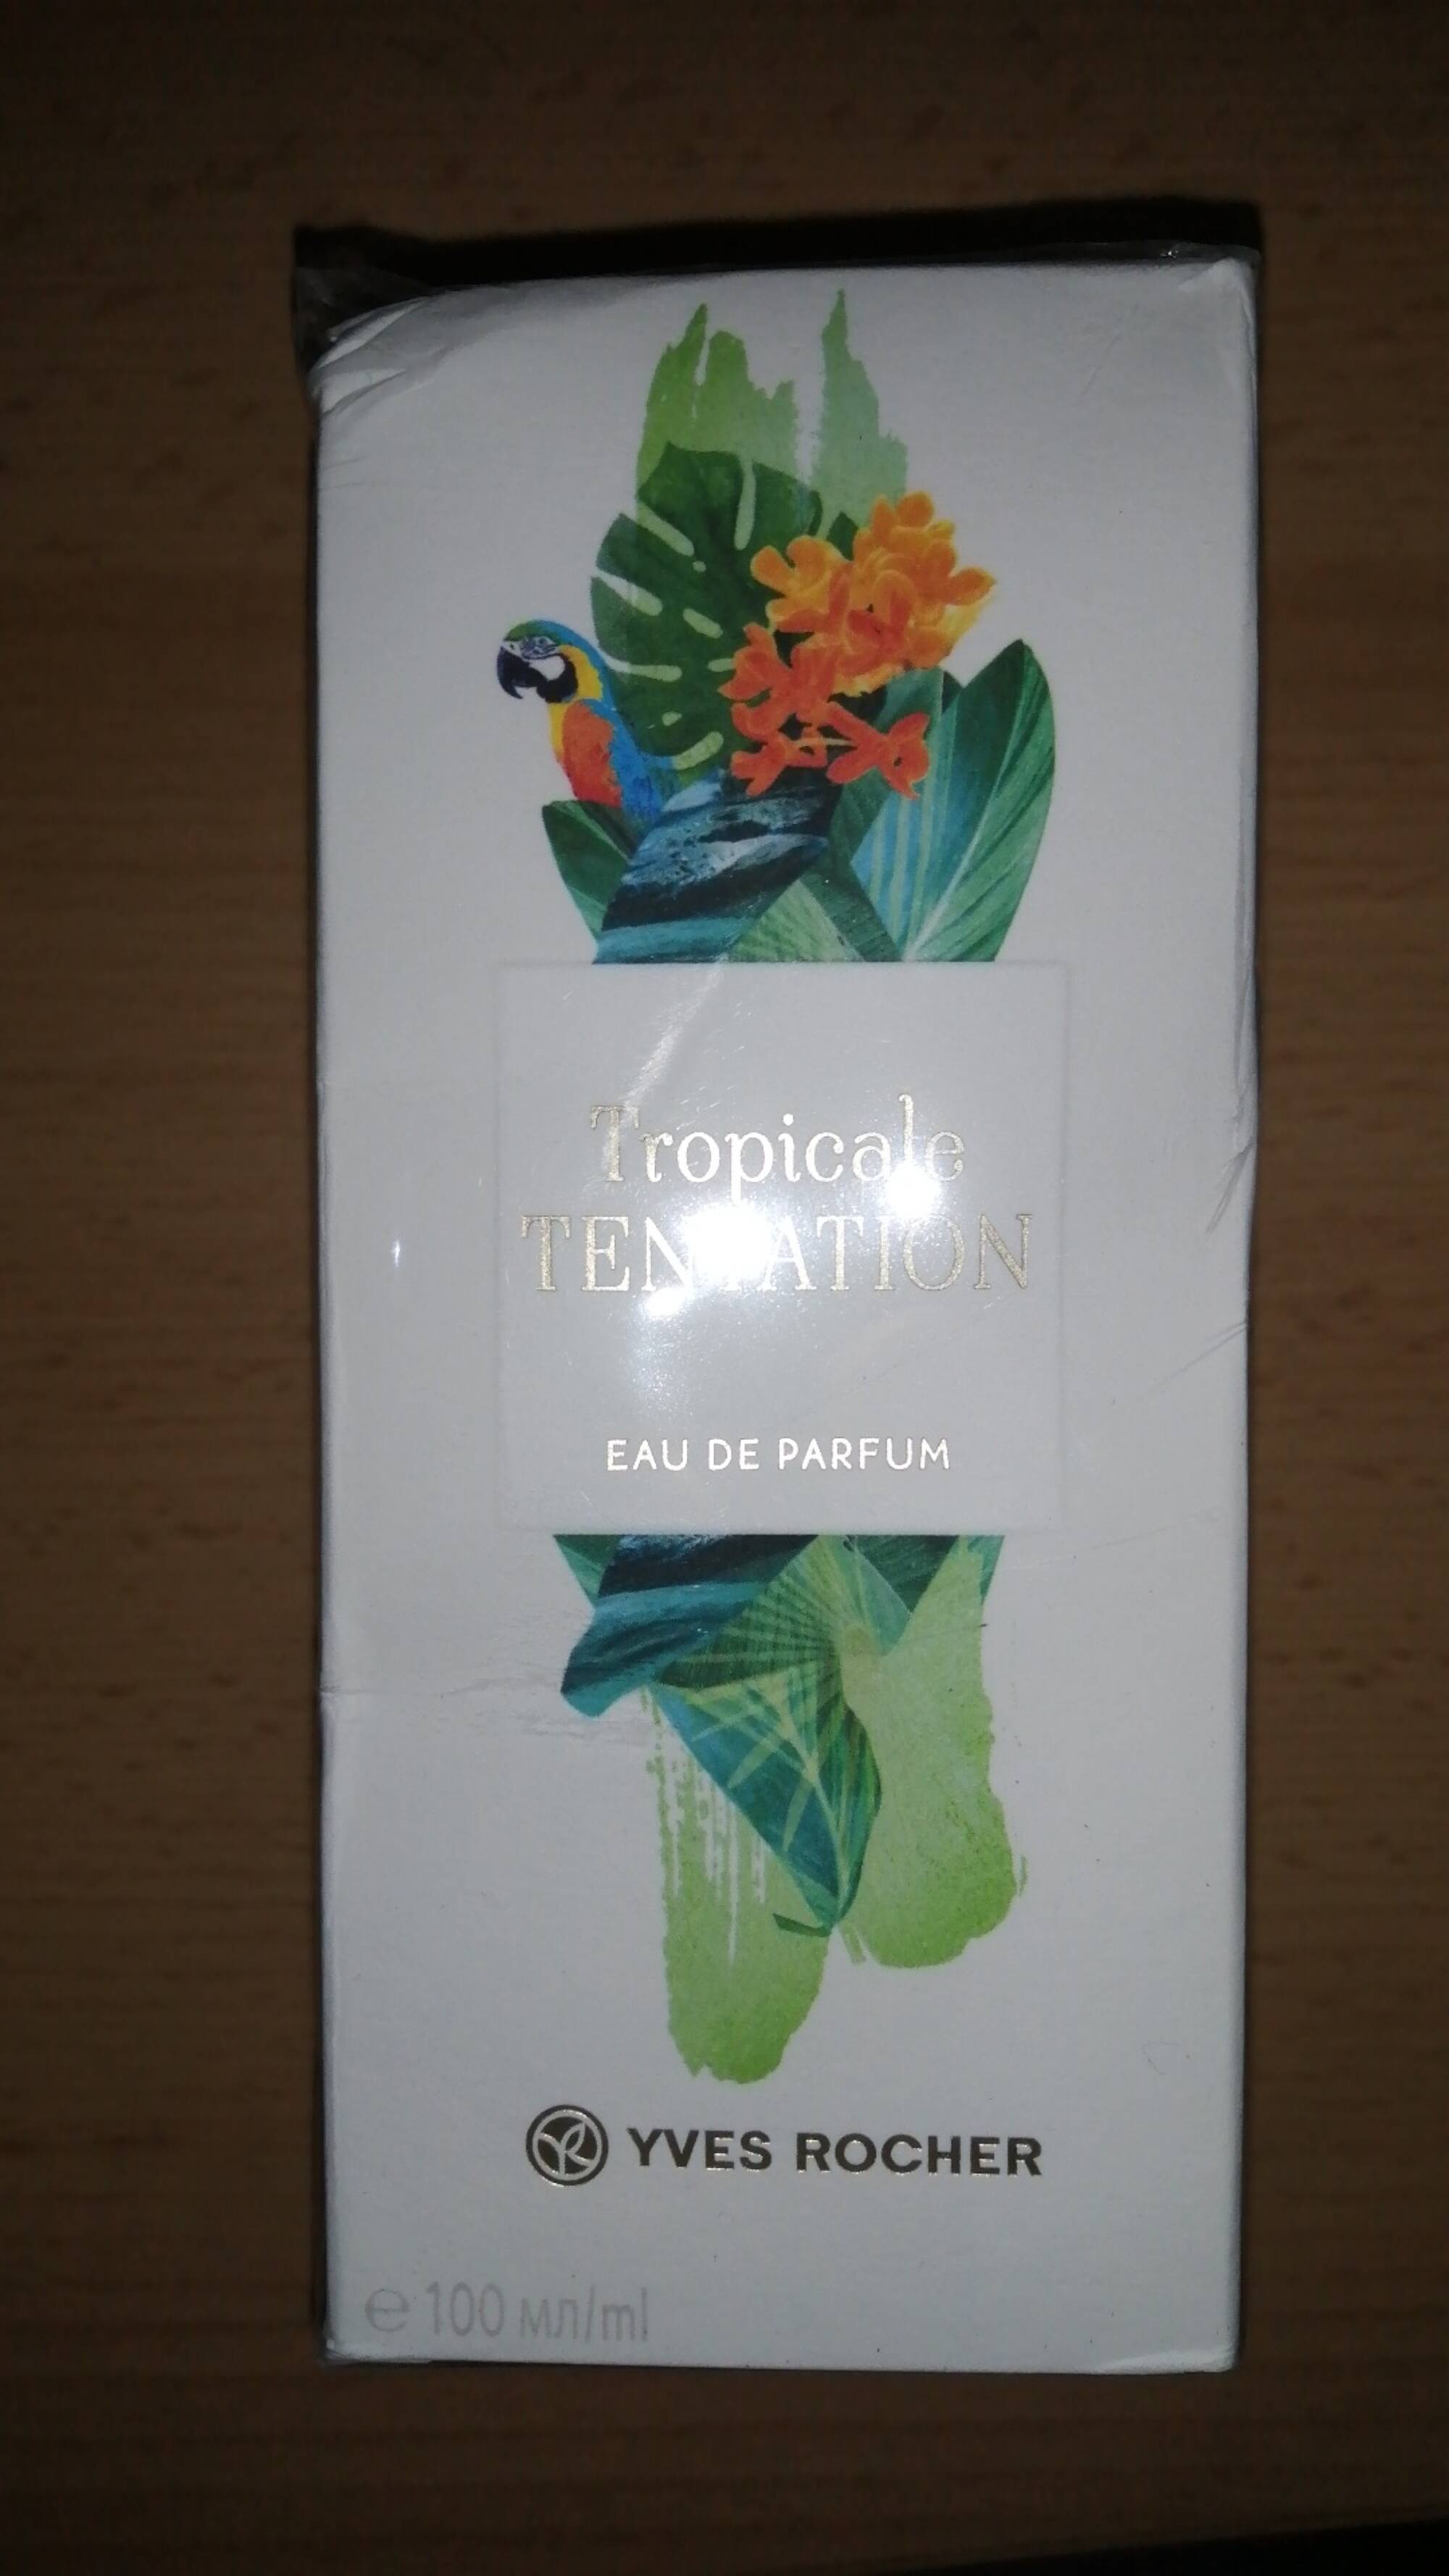 YVES ROCHER - Tropicale Tentation - Eau de parfum